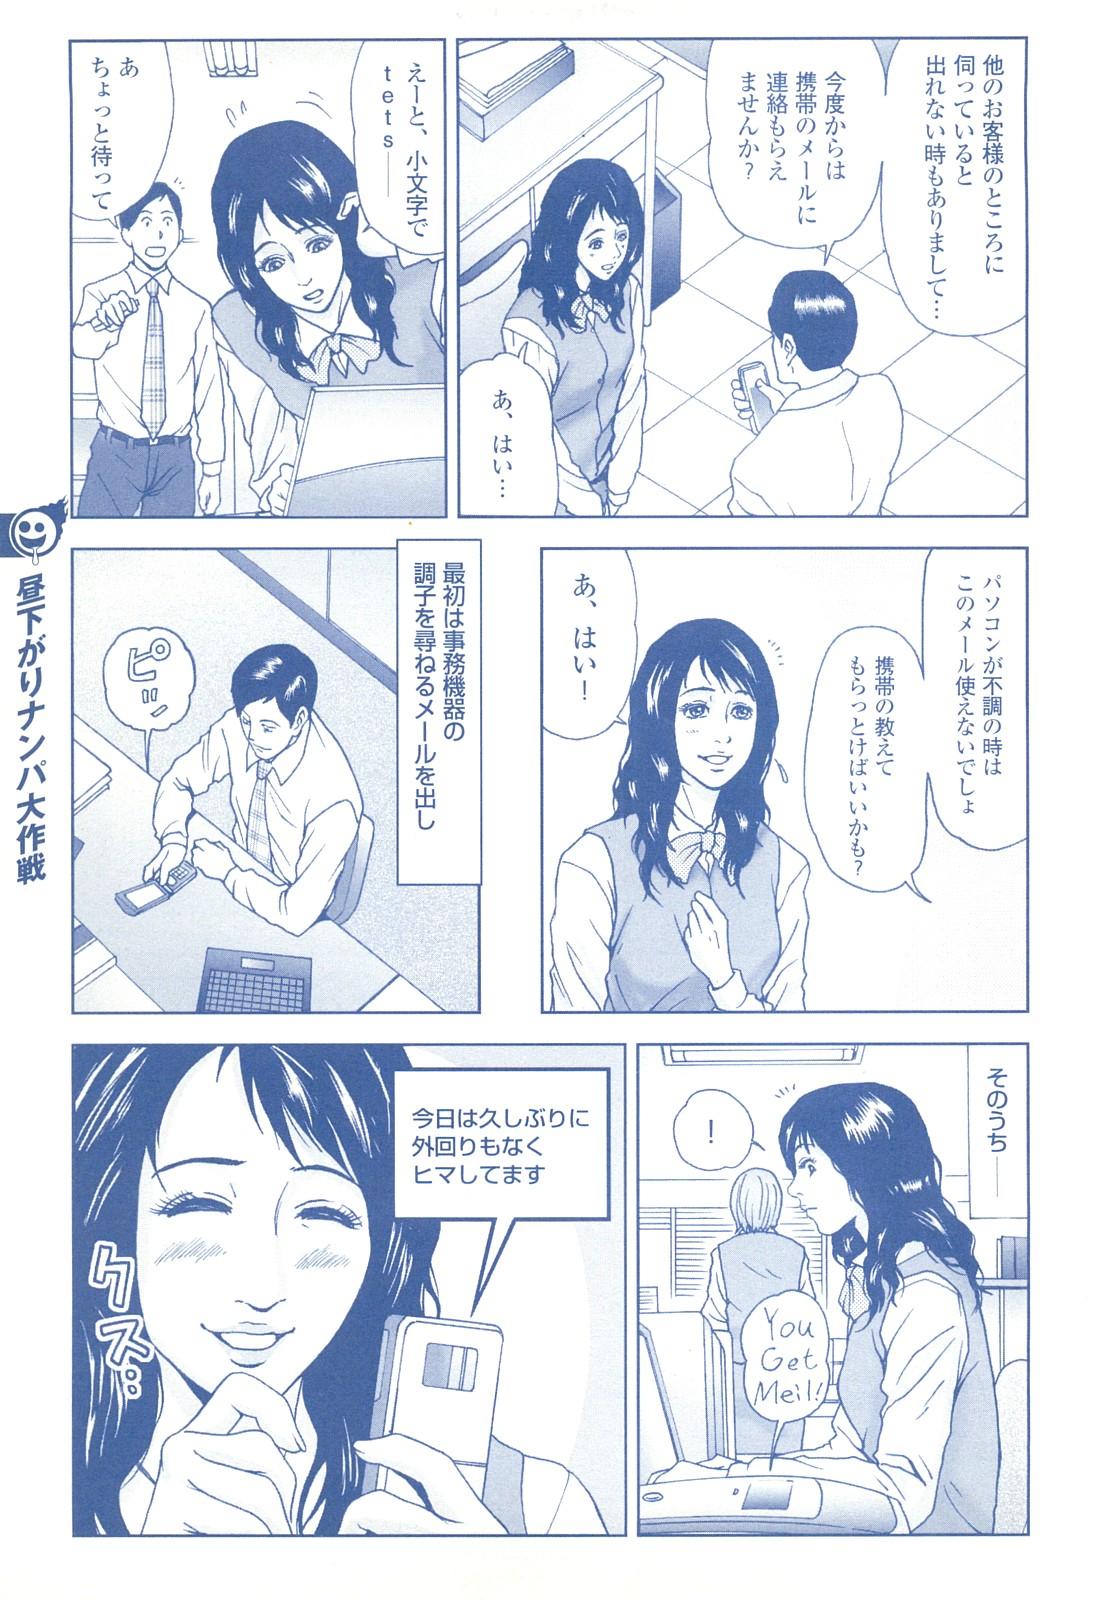 コミック裏モノJAPAN Vol.18 今井のりたつスペシャル号 232